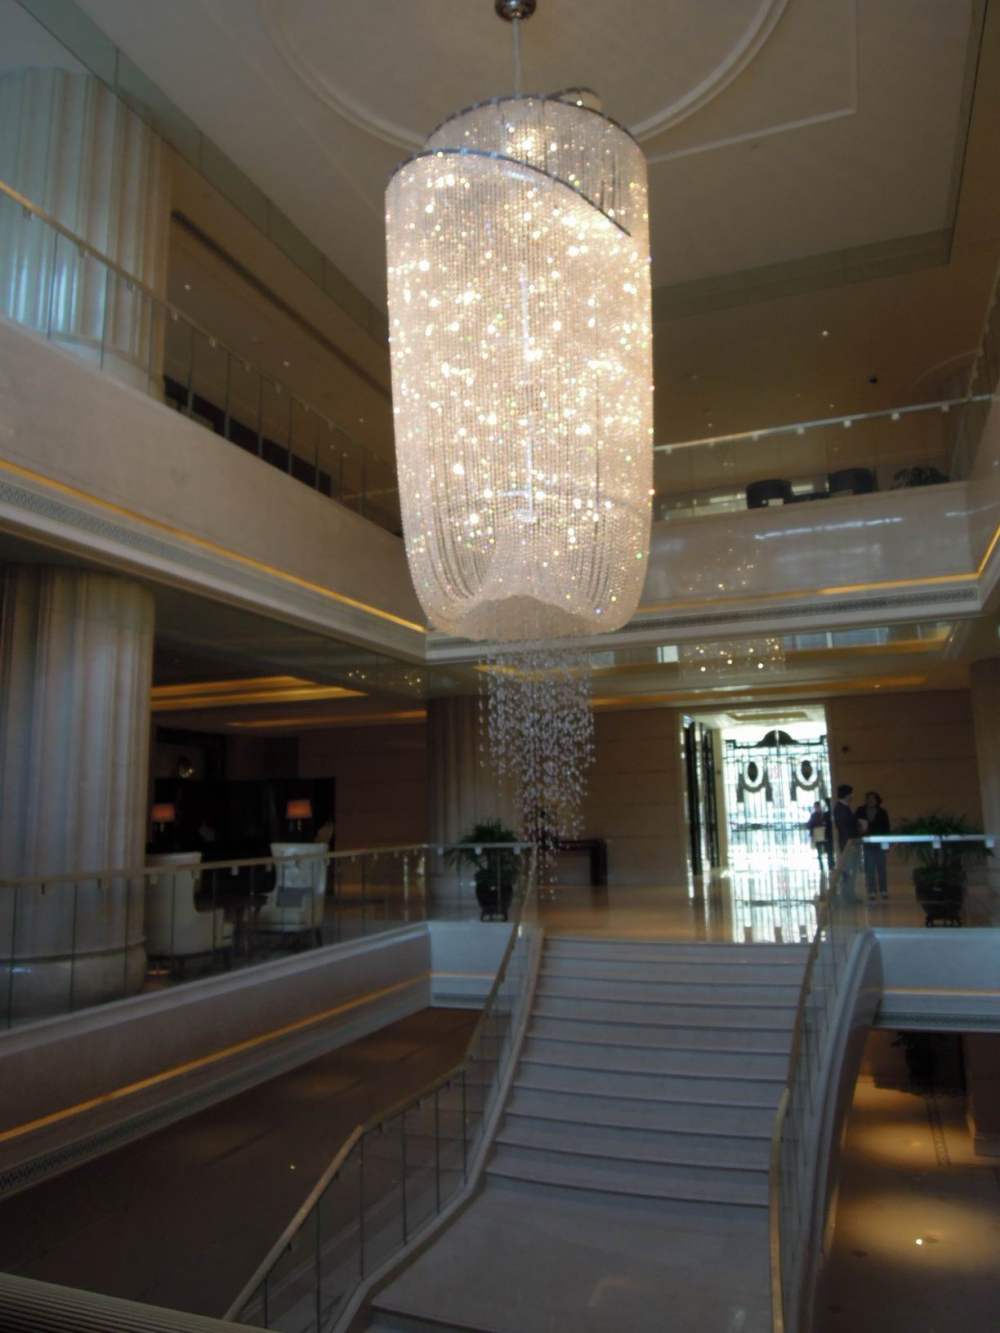 上海华尔道夫酒店(The Waldorf Astoria OnTheBund)(HBA)10.9第10页更新_调整大小 DSCN5351.JPG